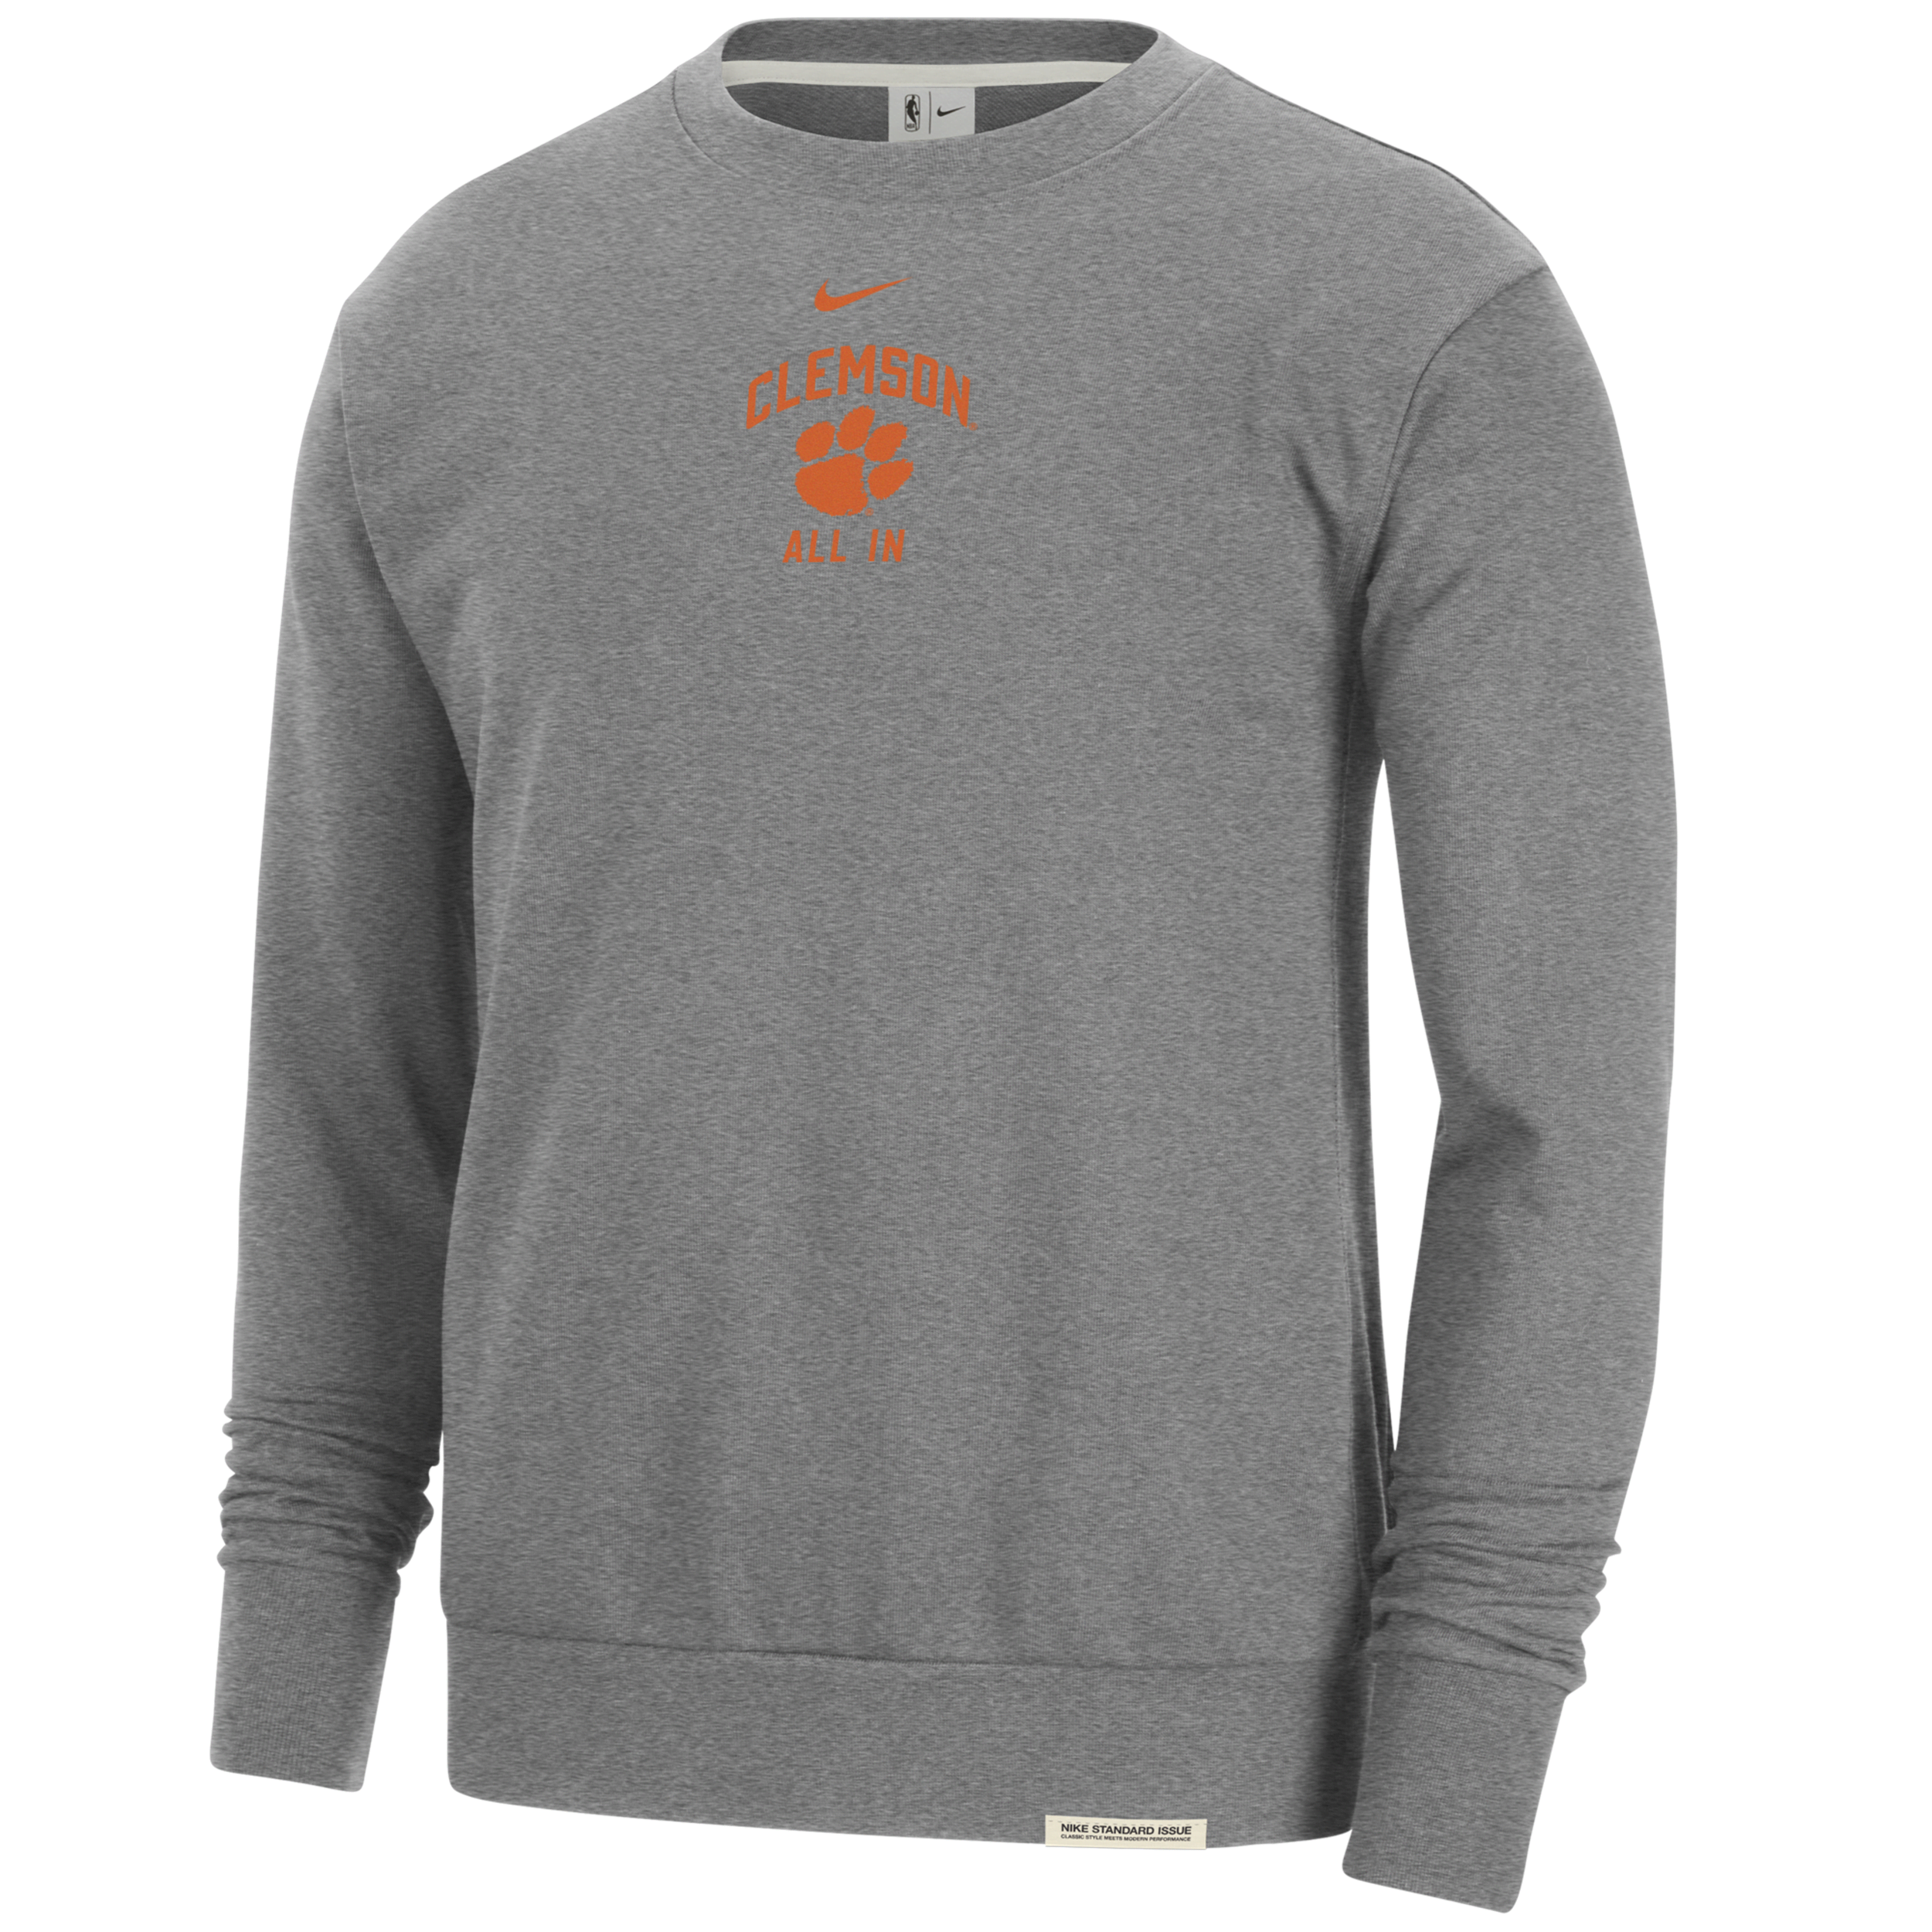 Nike Clemson Standard Issue  Men's College Fleece Crew-neck Sweatshirt In Grey